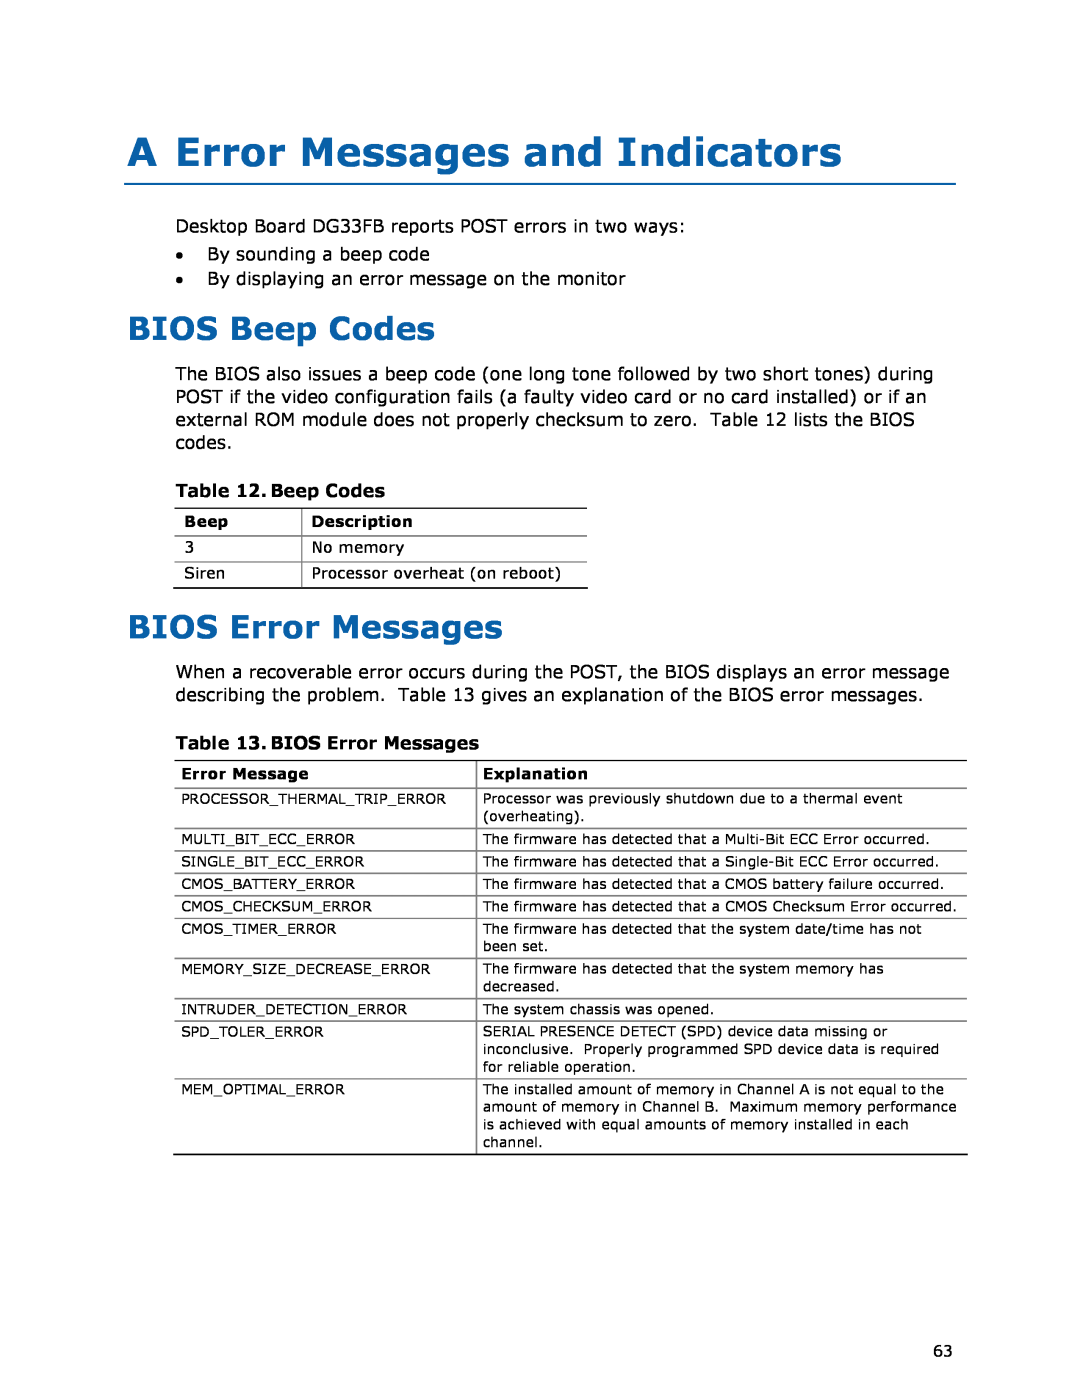 Intel DG33FB manual A Error Messages and Indicators, BIOS Beep Codes, BIOS Error Messages 